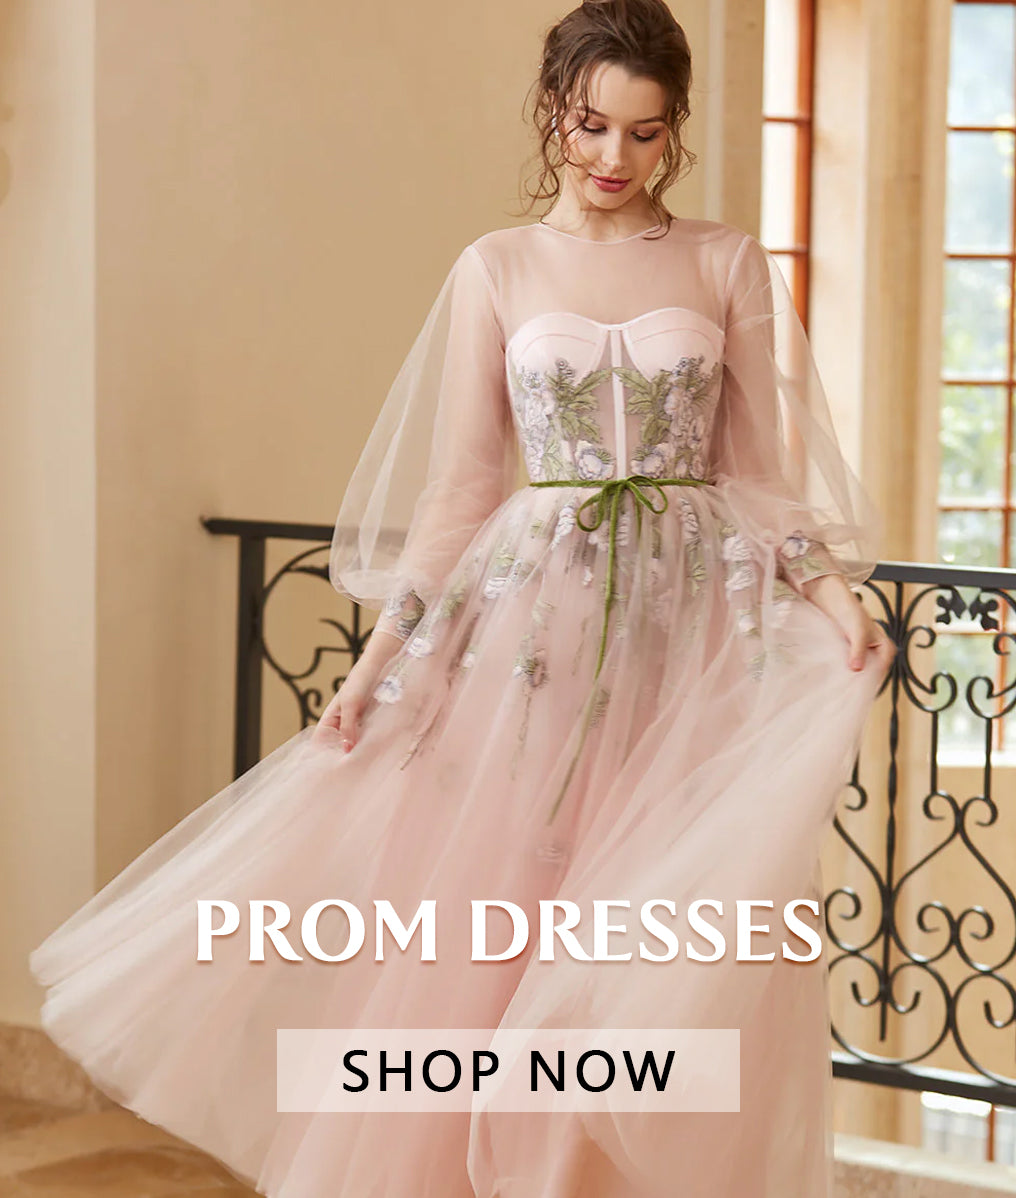 Buy White/ivory Chiffon Wedding/bridesmaid Dress Bridal Gowns UK Size  6,8,10,12,14,16,18 Online in India - Etsy